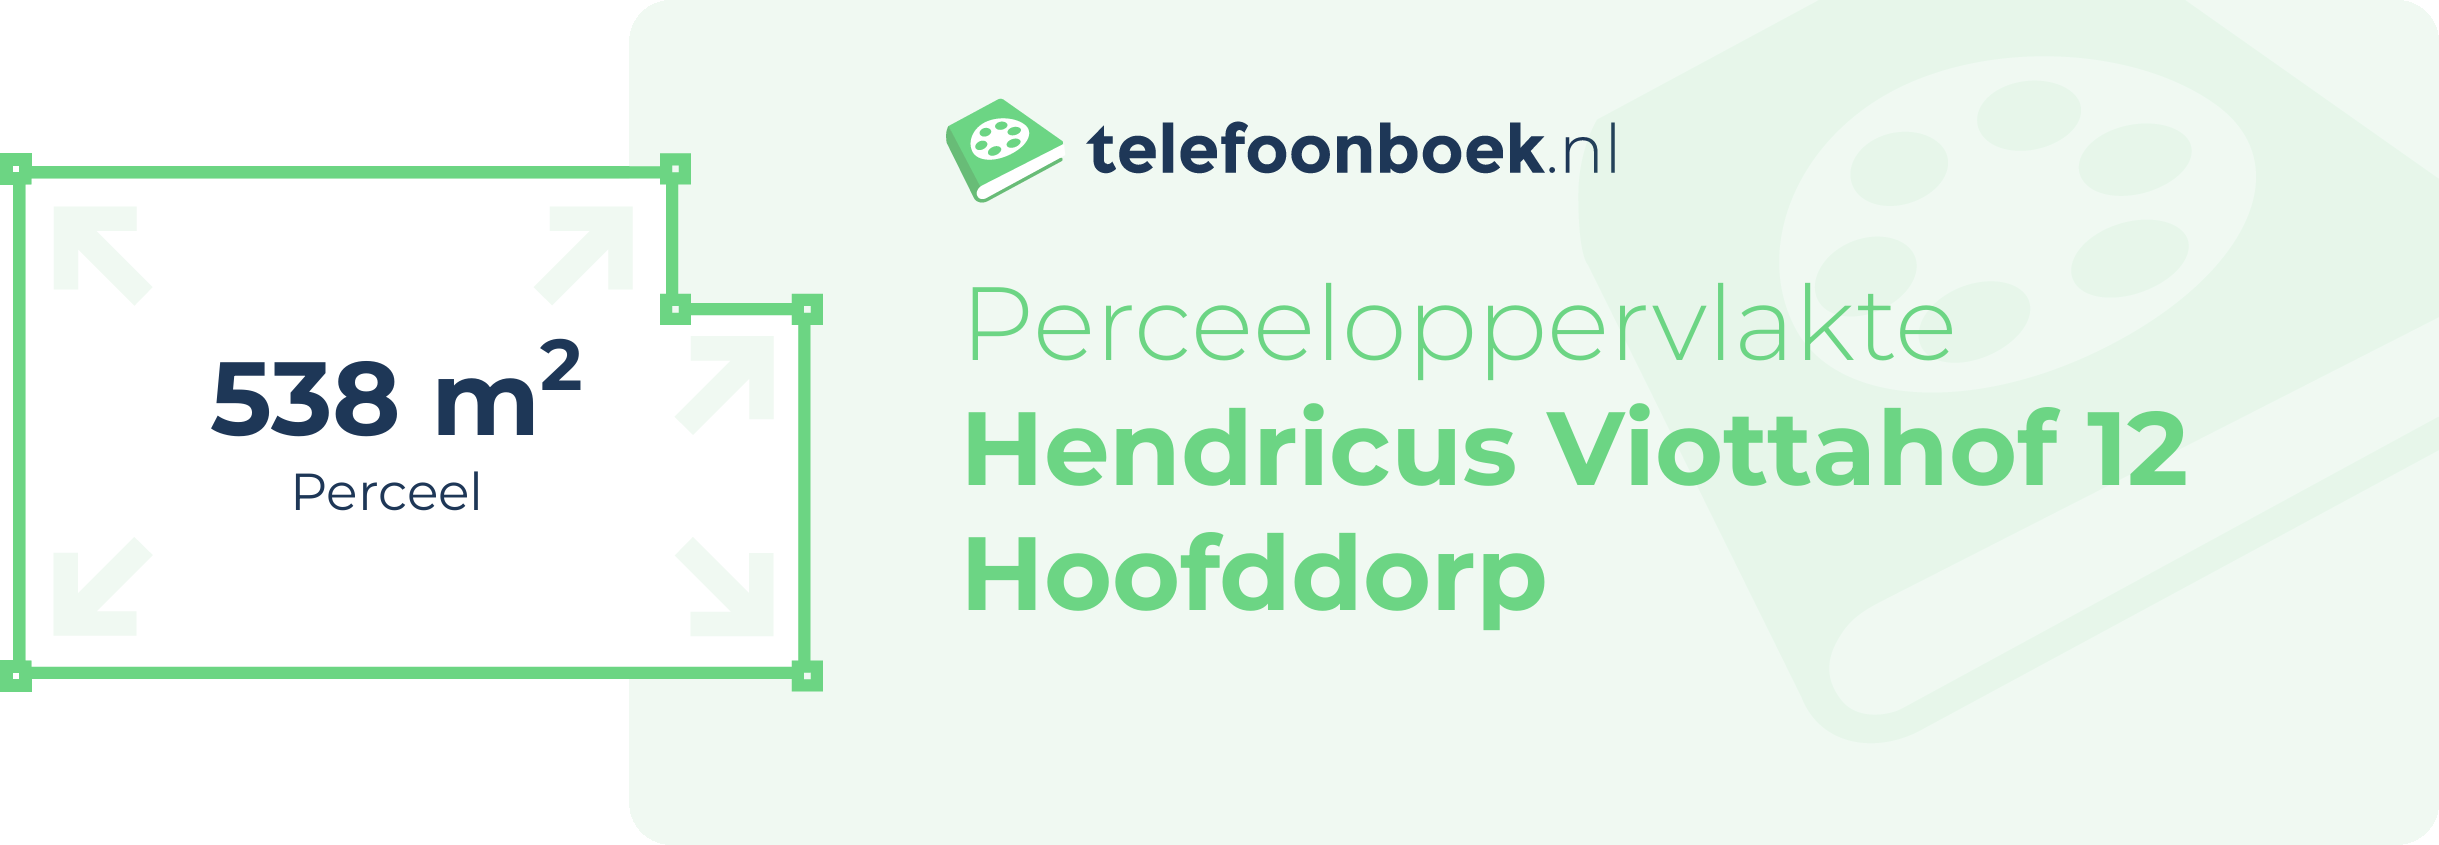 Perceeloppervlakte Hendricus Viottahof 12 Hoofddorp